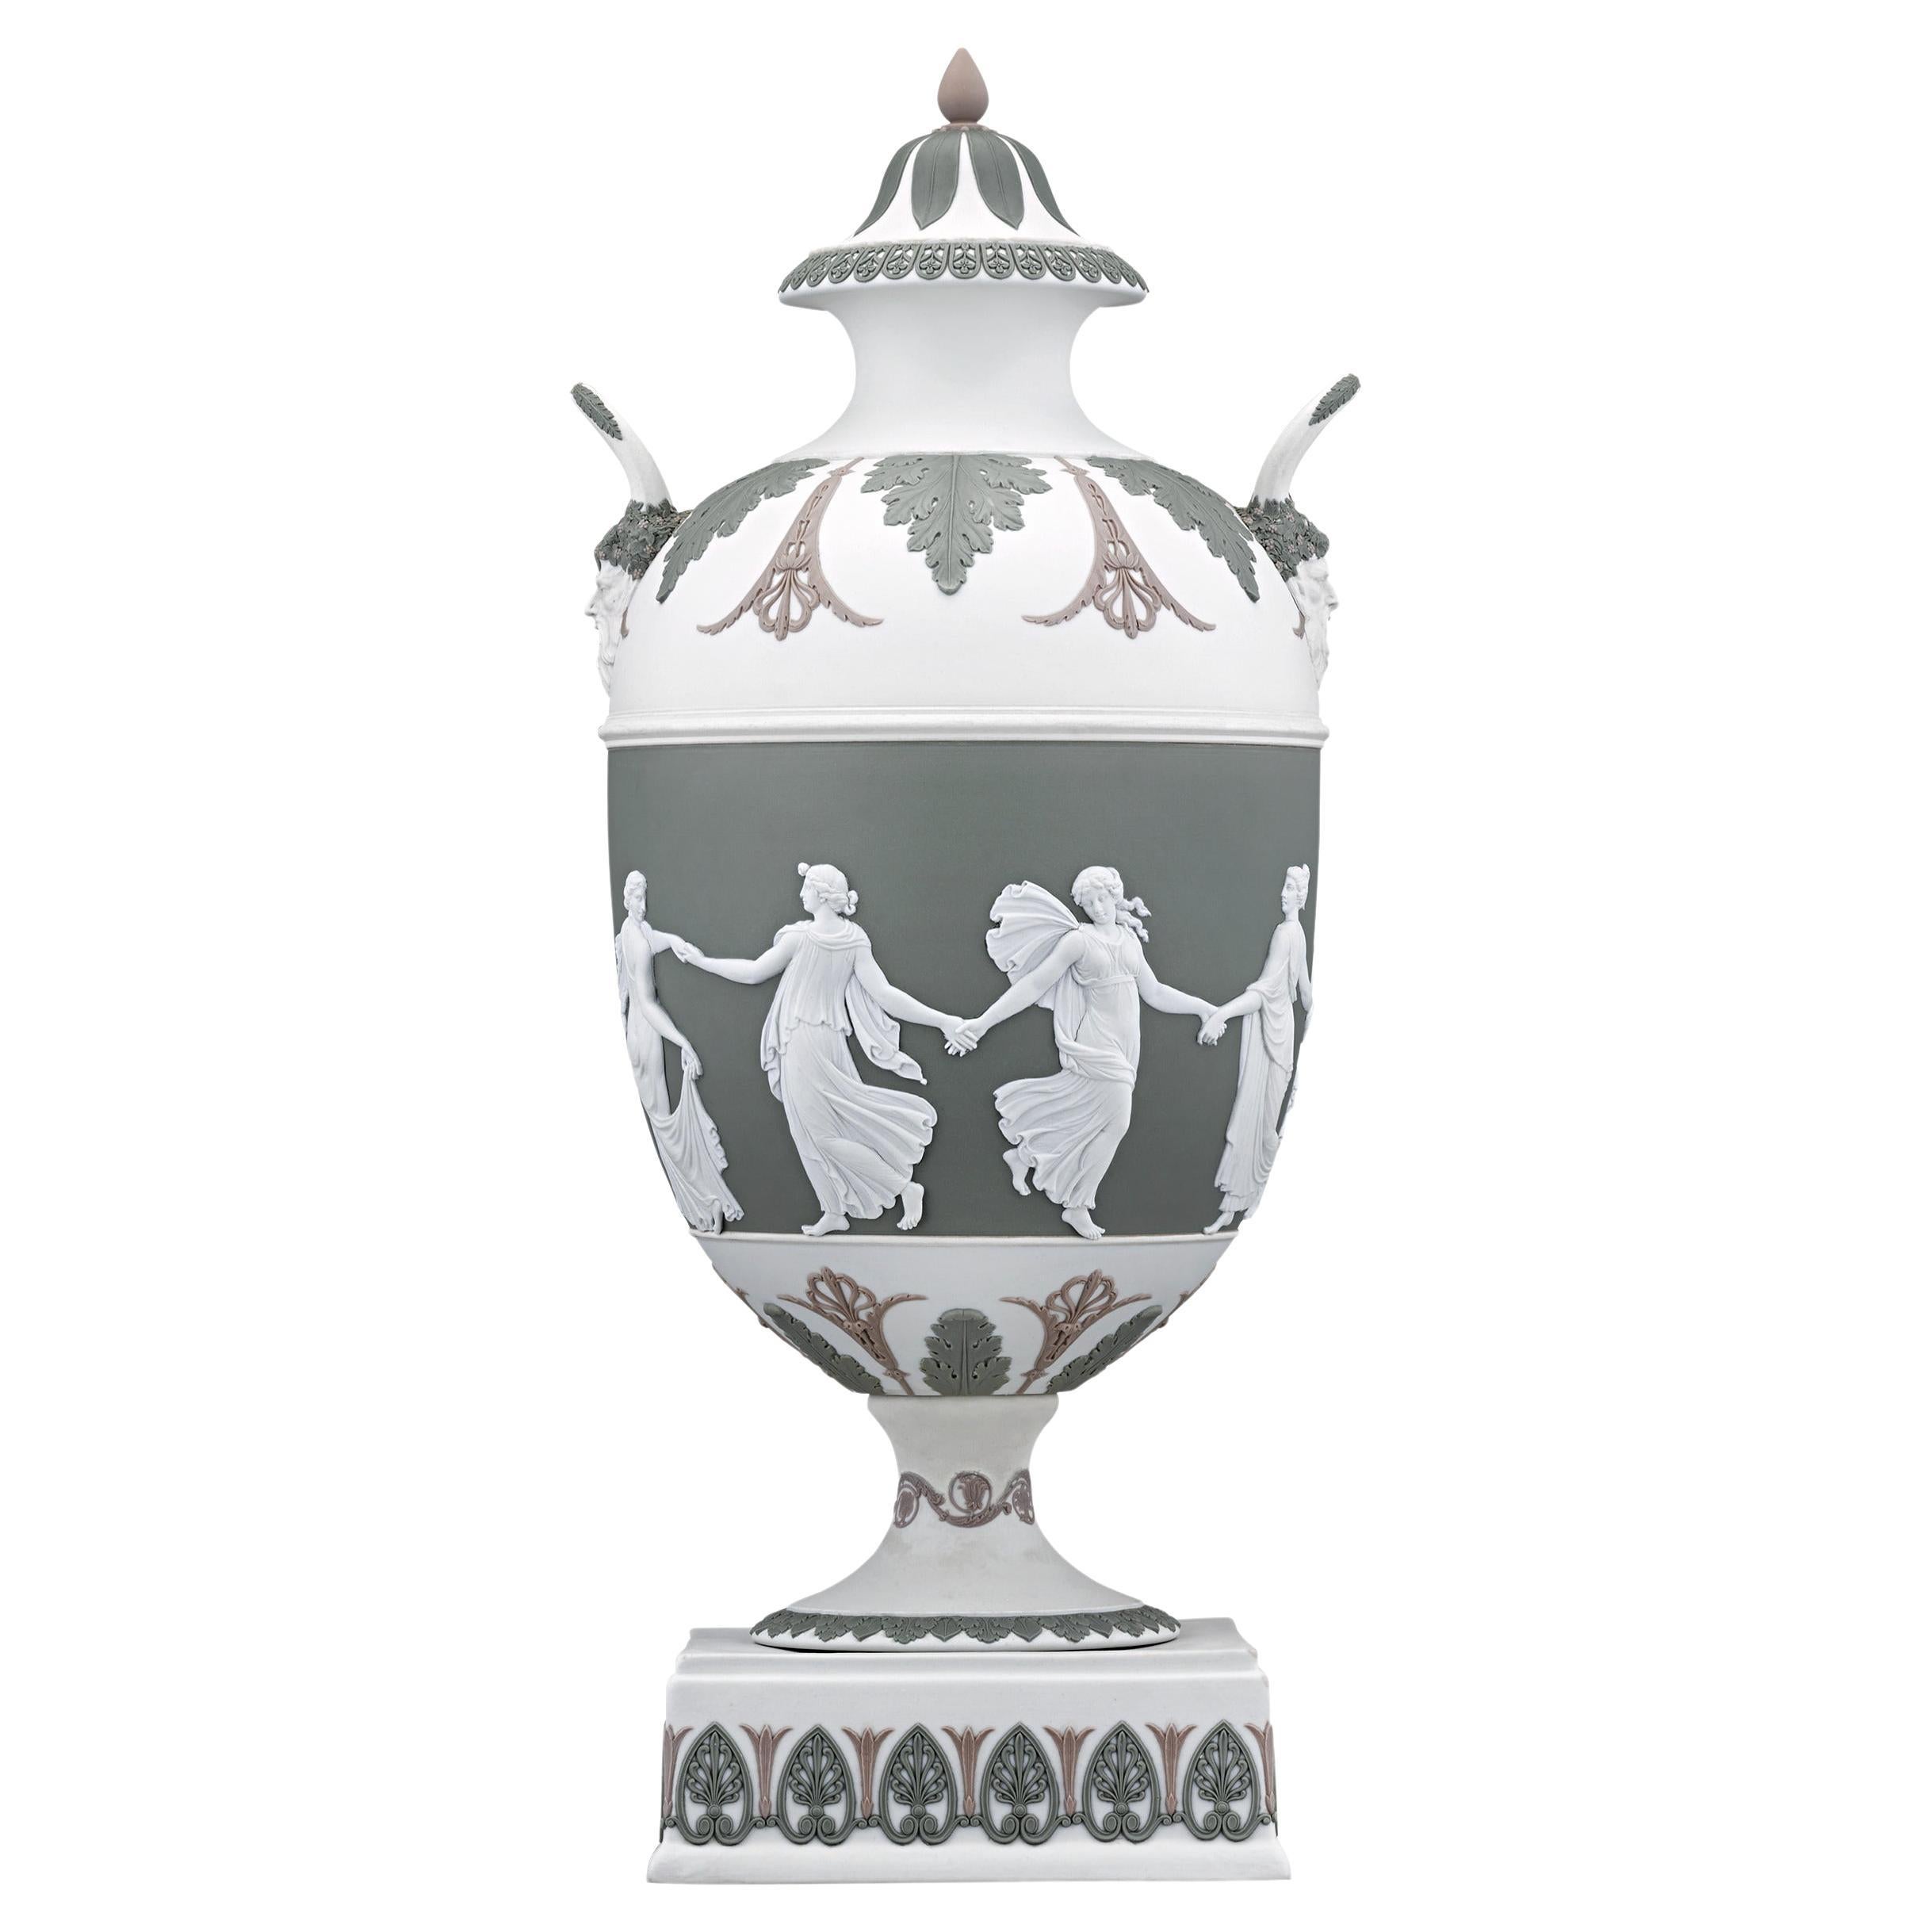 The Dancing Hours Tricolor Jasperware Vase by Wedgwood